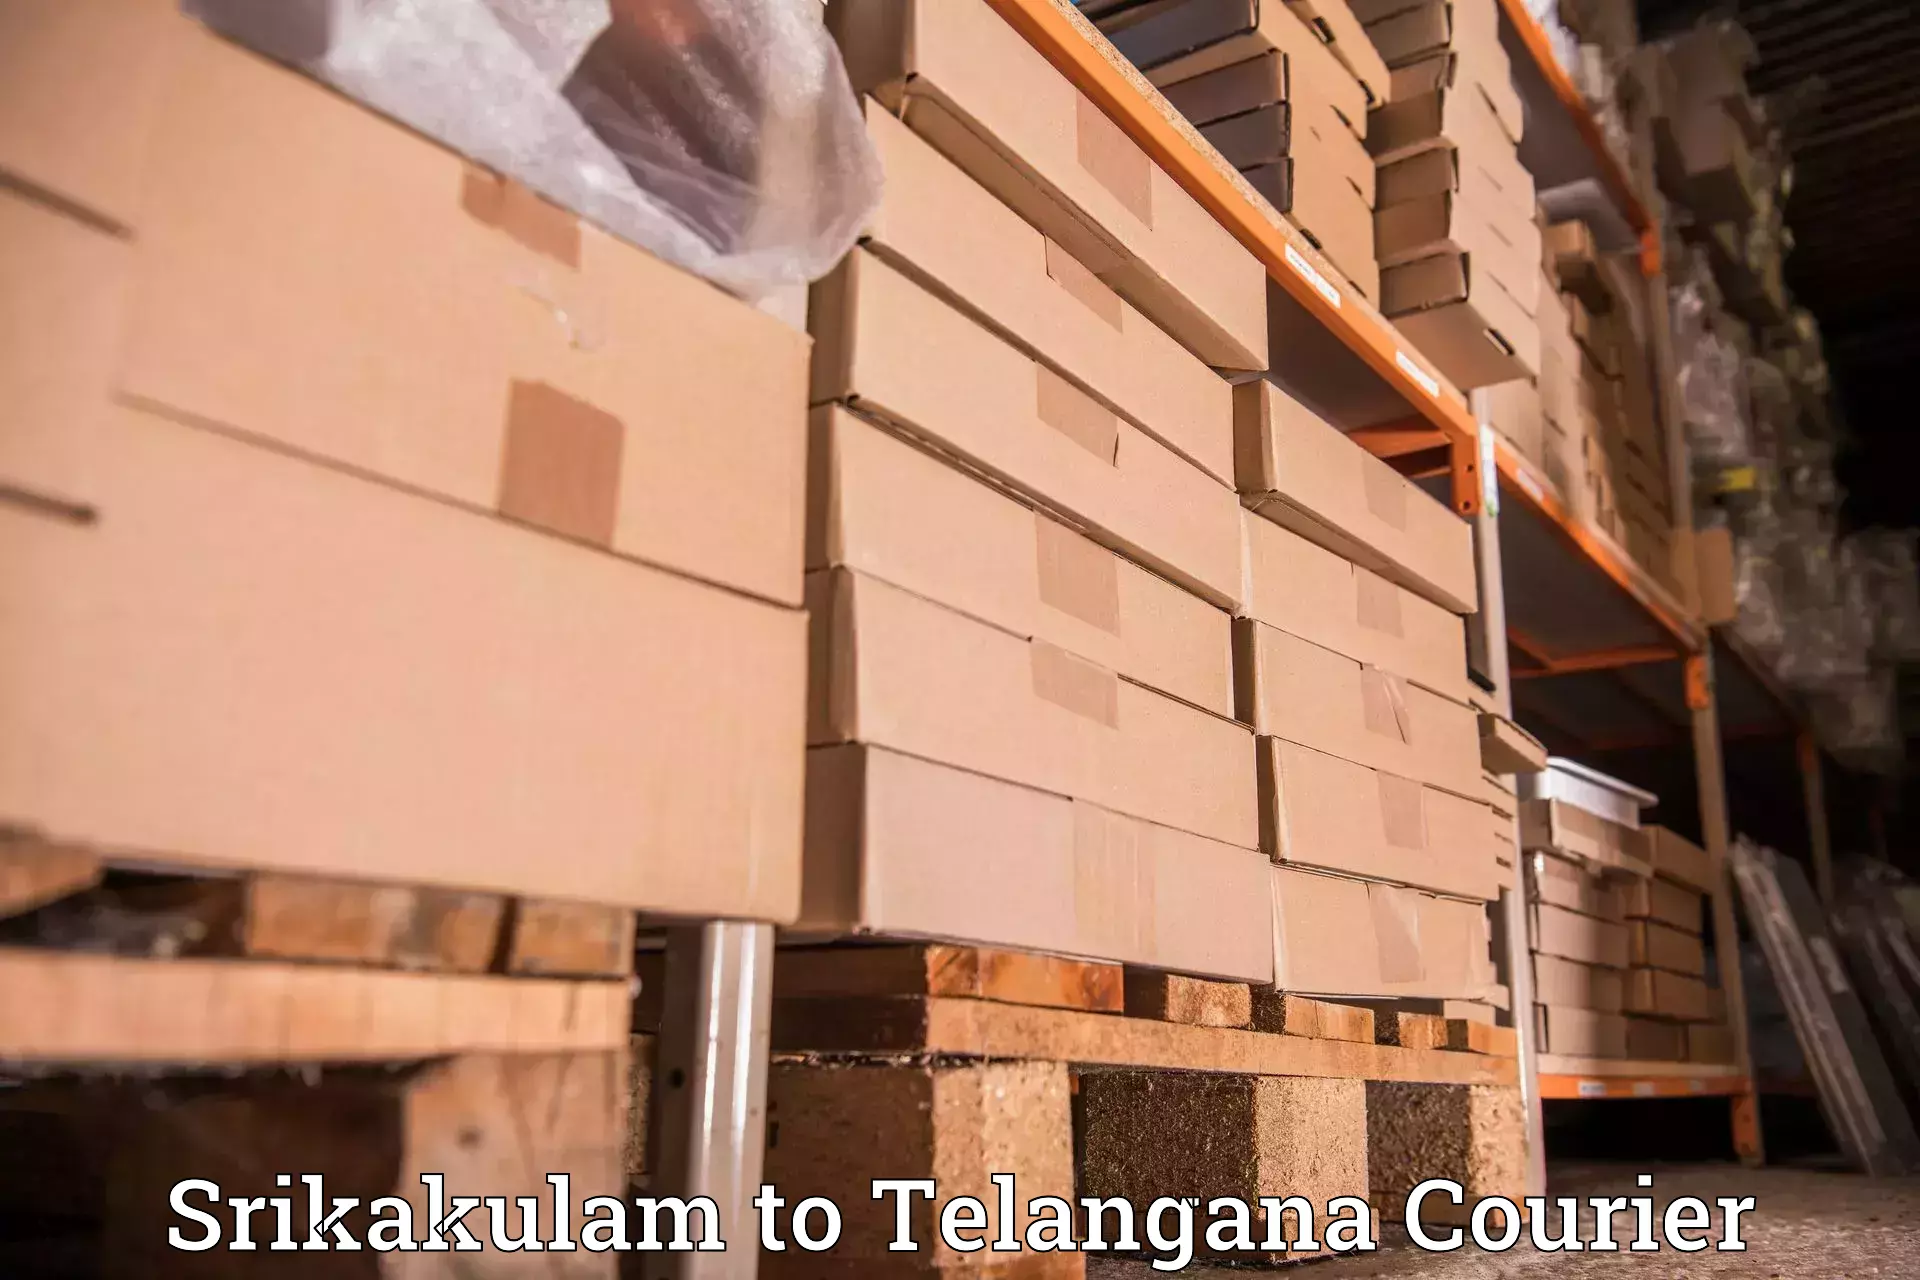 Emergency parcel delivery in Srikakulam to Kothagudem